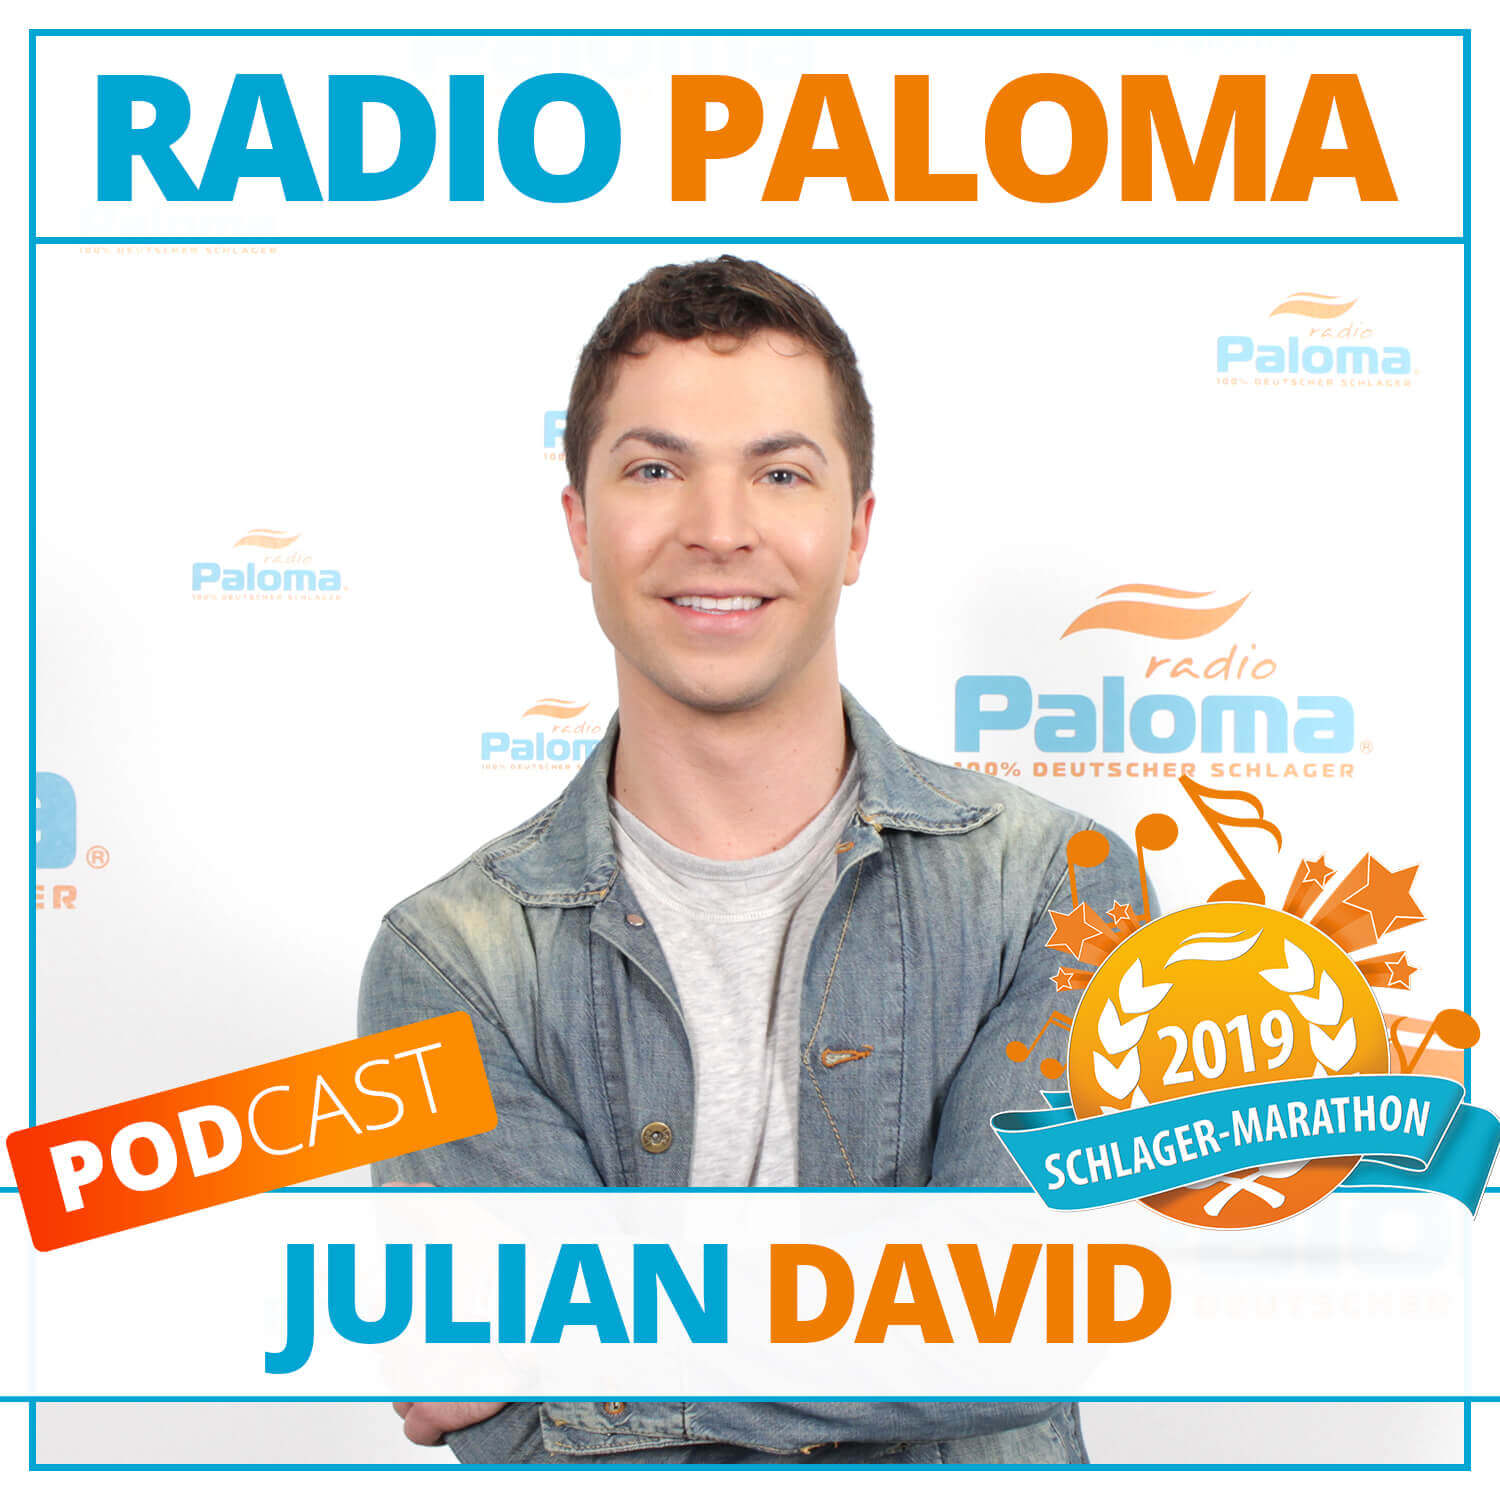 Der Radio Paloma Schlager-Marathon 2019 mit Julian David